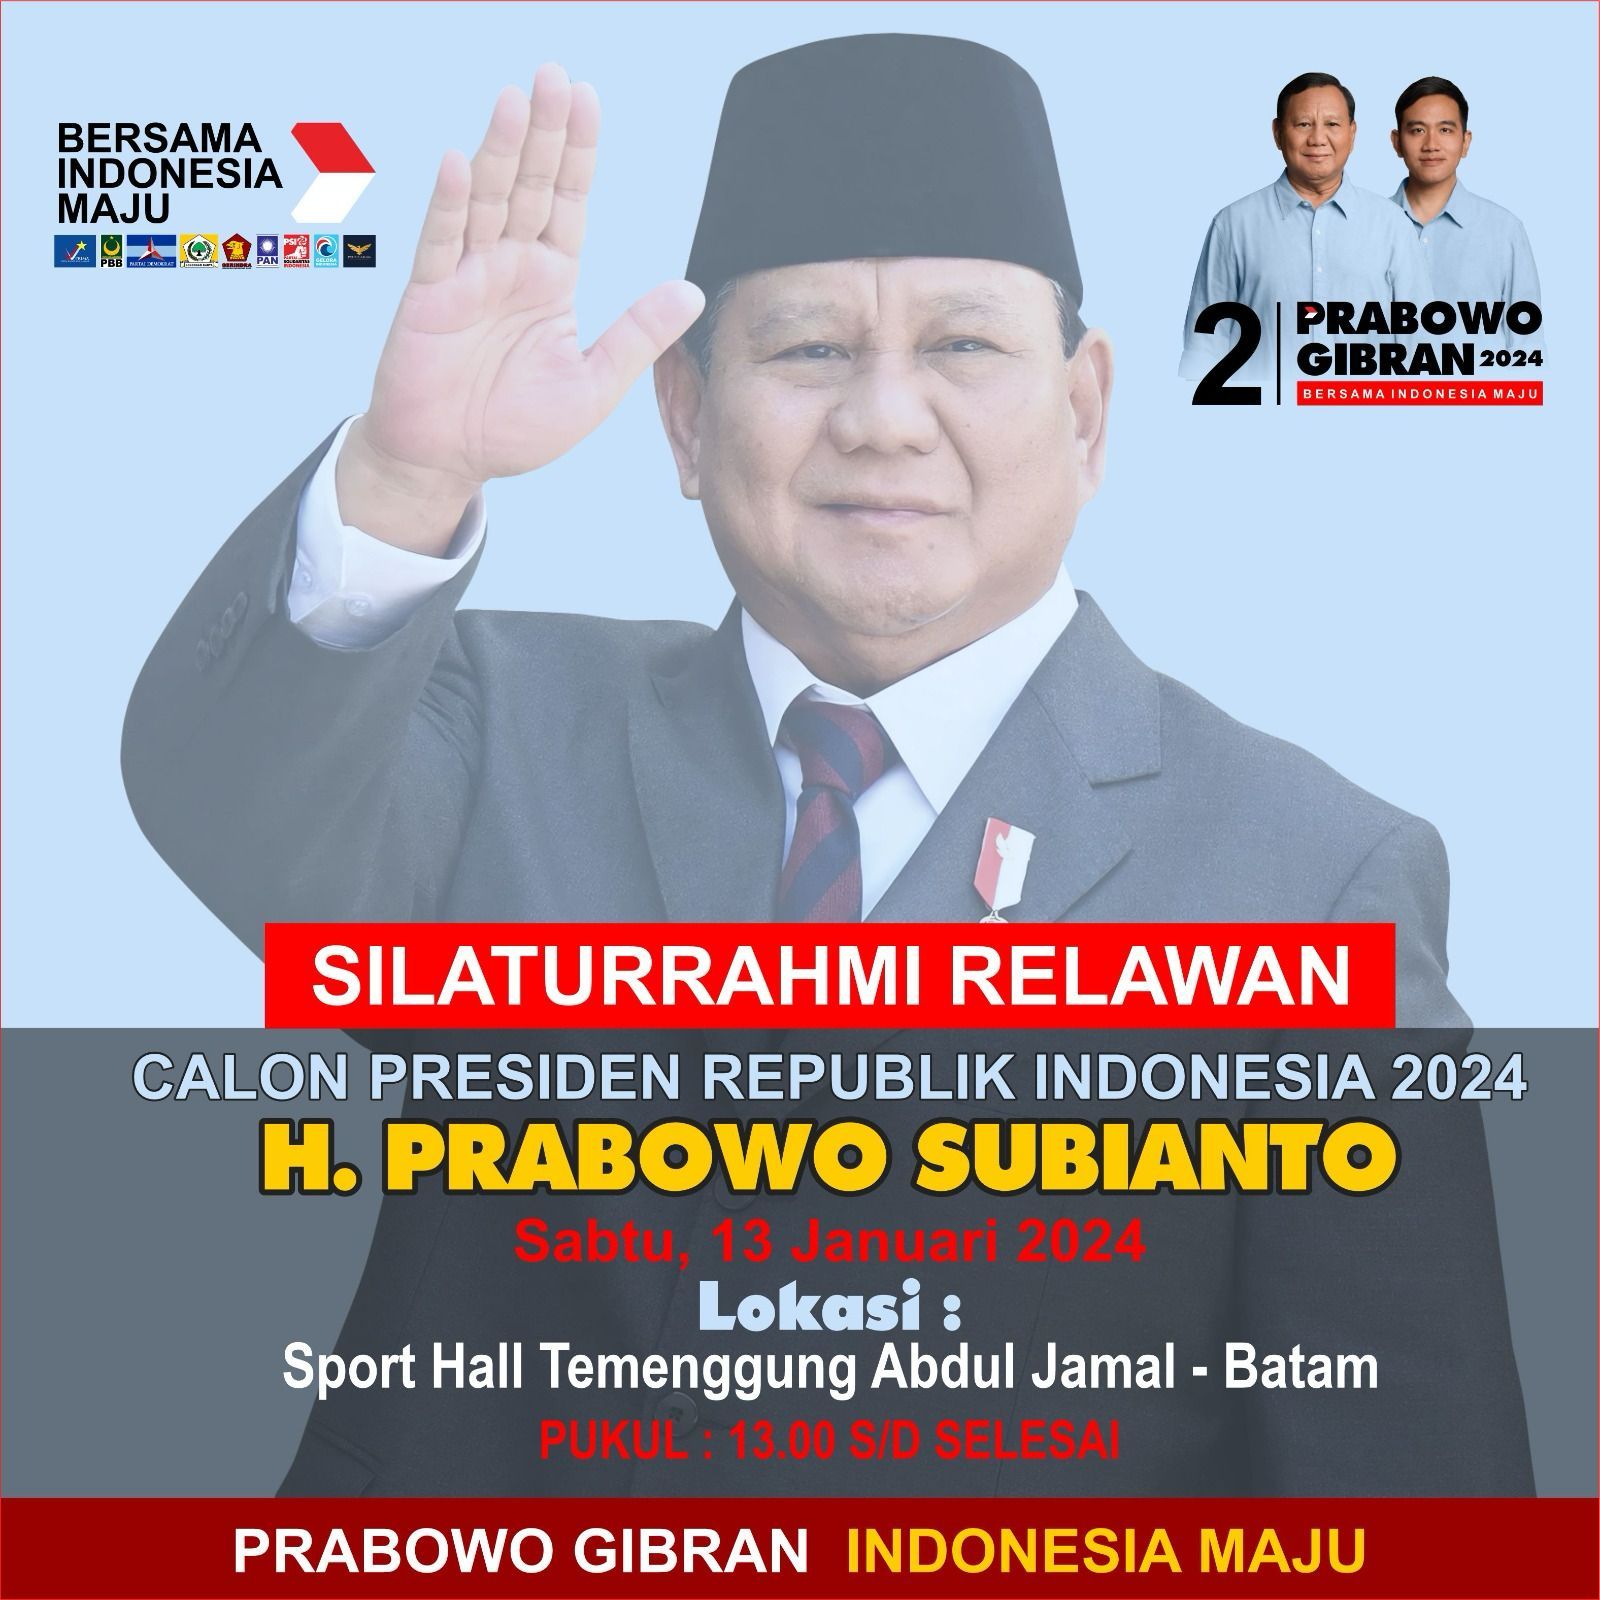 Prabowo Subianto, Calon Presiden (Capres) No urut 2 dijadwalkan akan menghadiri kegiatan Silaturahmi Relawan Prabowo Gibran, Sabtu (13/1/2024) di Batam, Kepulauan Riau (Kepri).